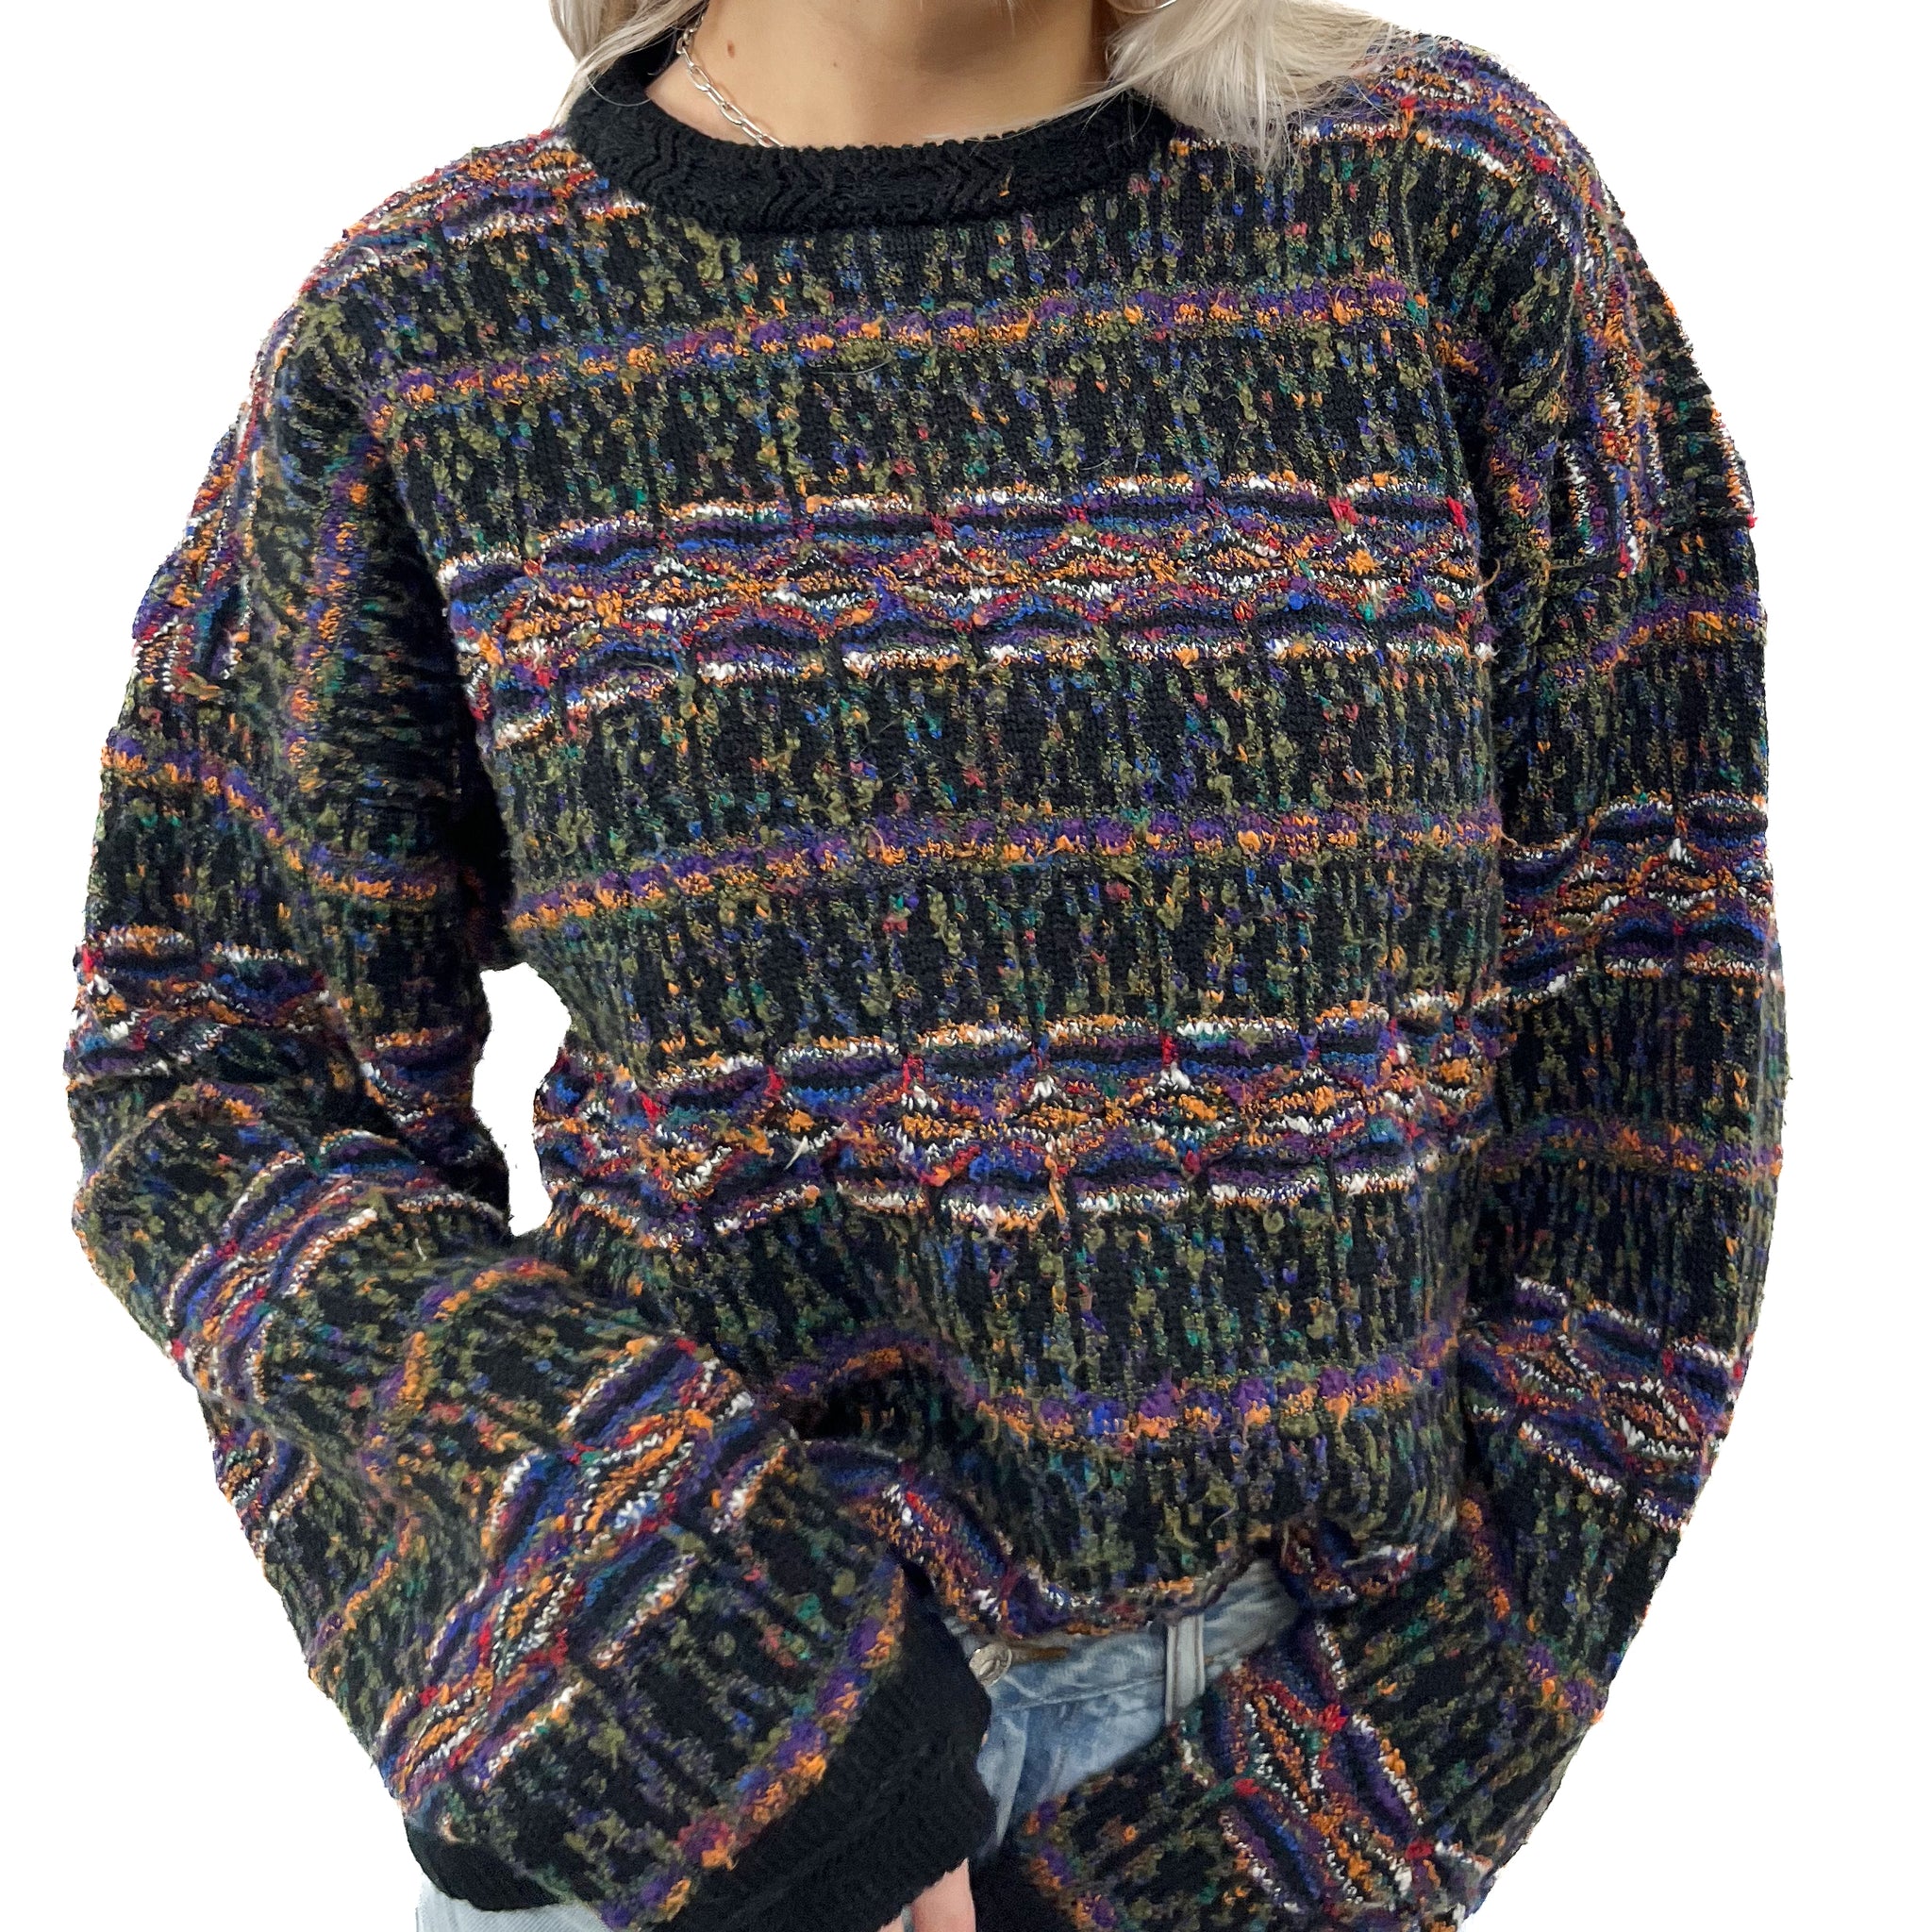 90s Cozy Sweater